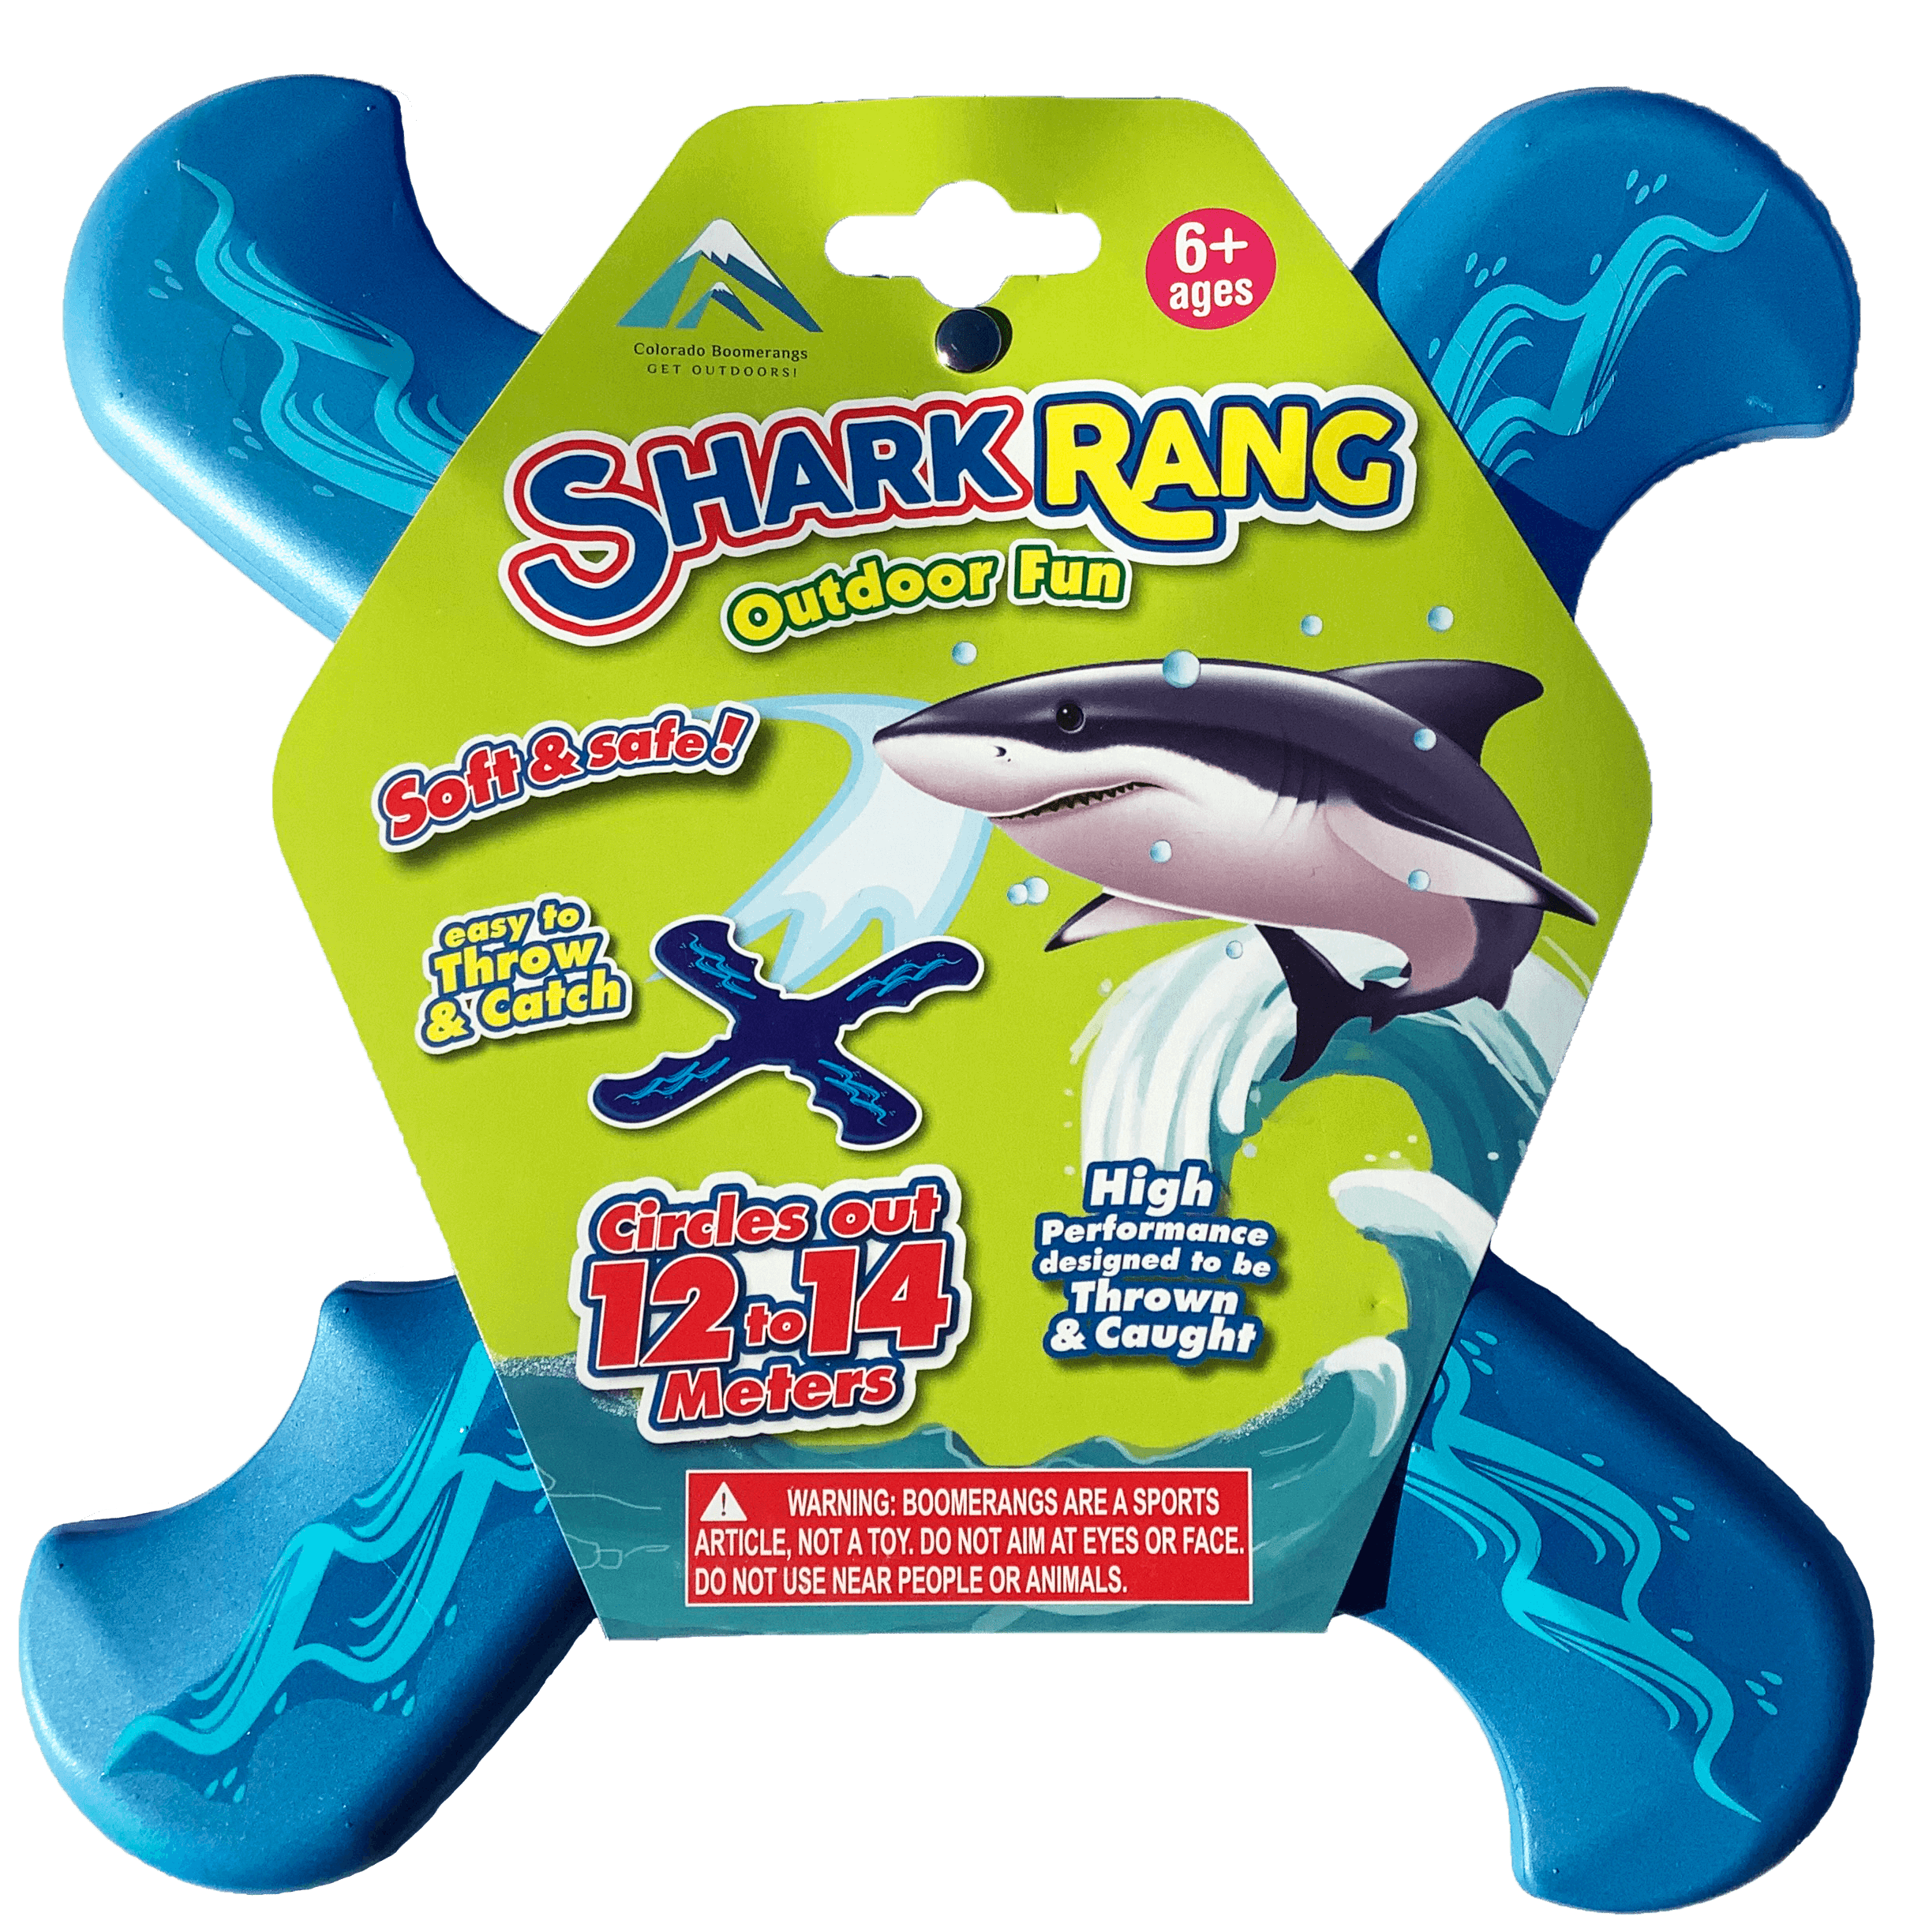 Colorado Boomerangs Shark Rang Boomerang - Great Beginner Boomerang for Kids or Adults. Soft and Safe.